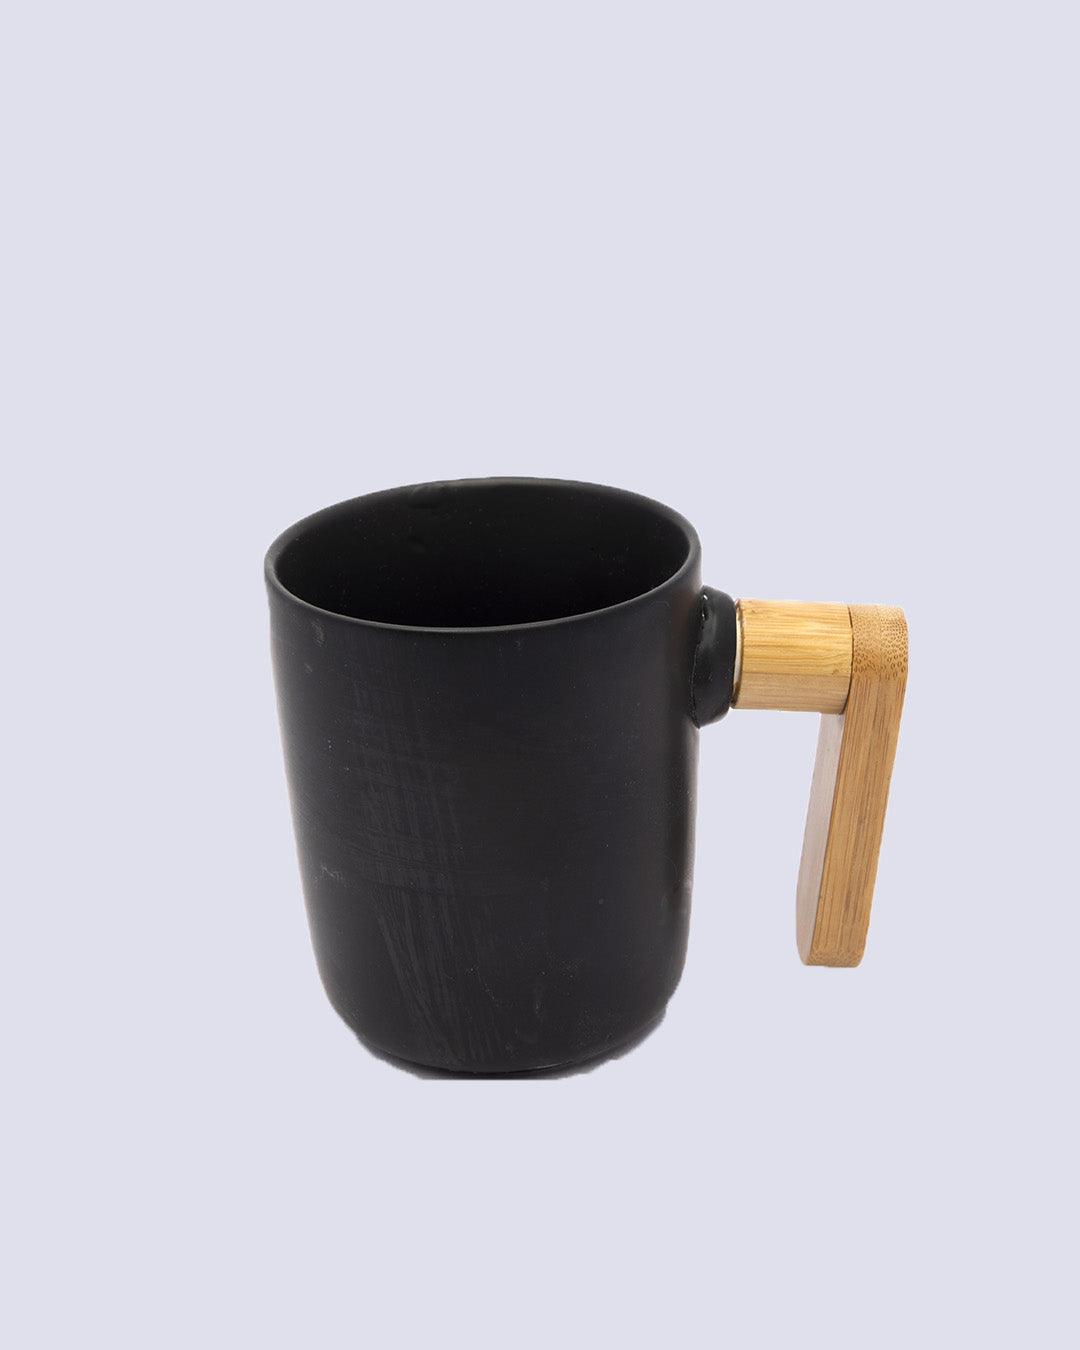 Market99 Bowls & Mug Set, with Wooden Tray, Black, Ceramic & Bamboo, Set of 2 Bowls & a Mug - MARKET 99